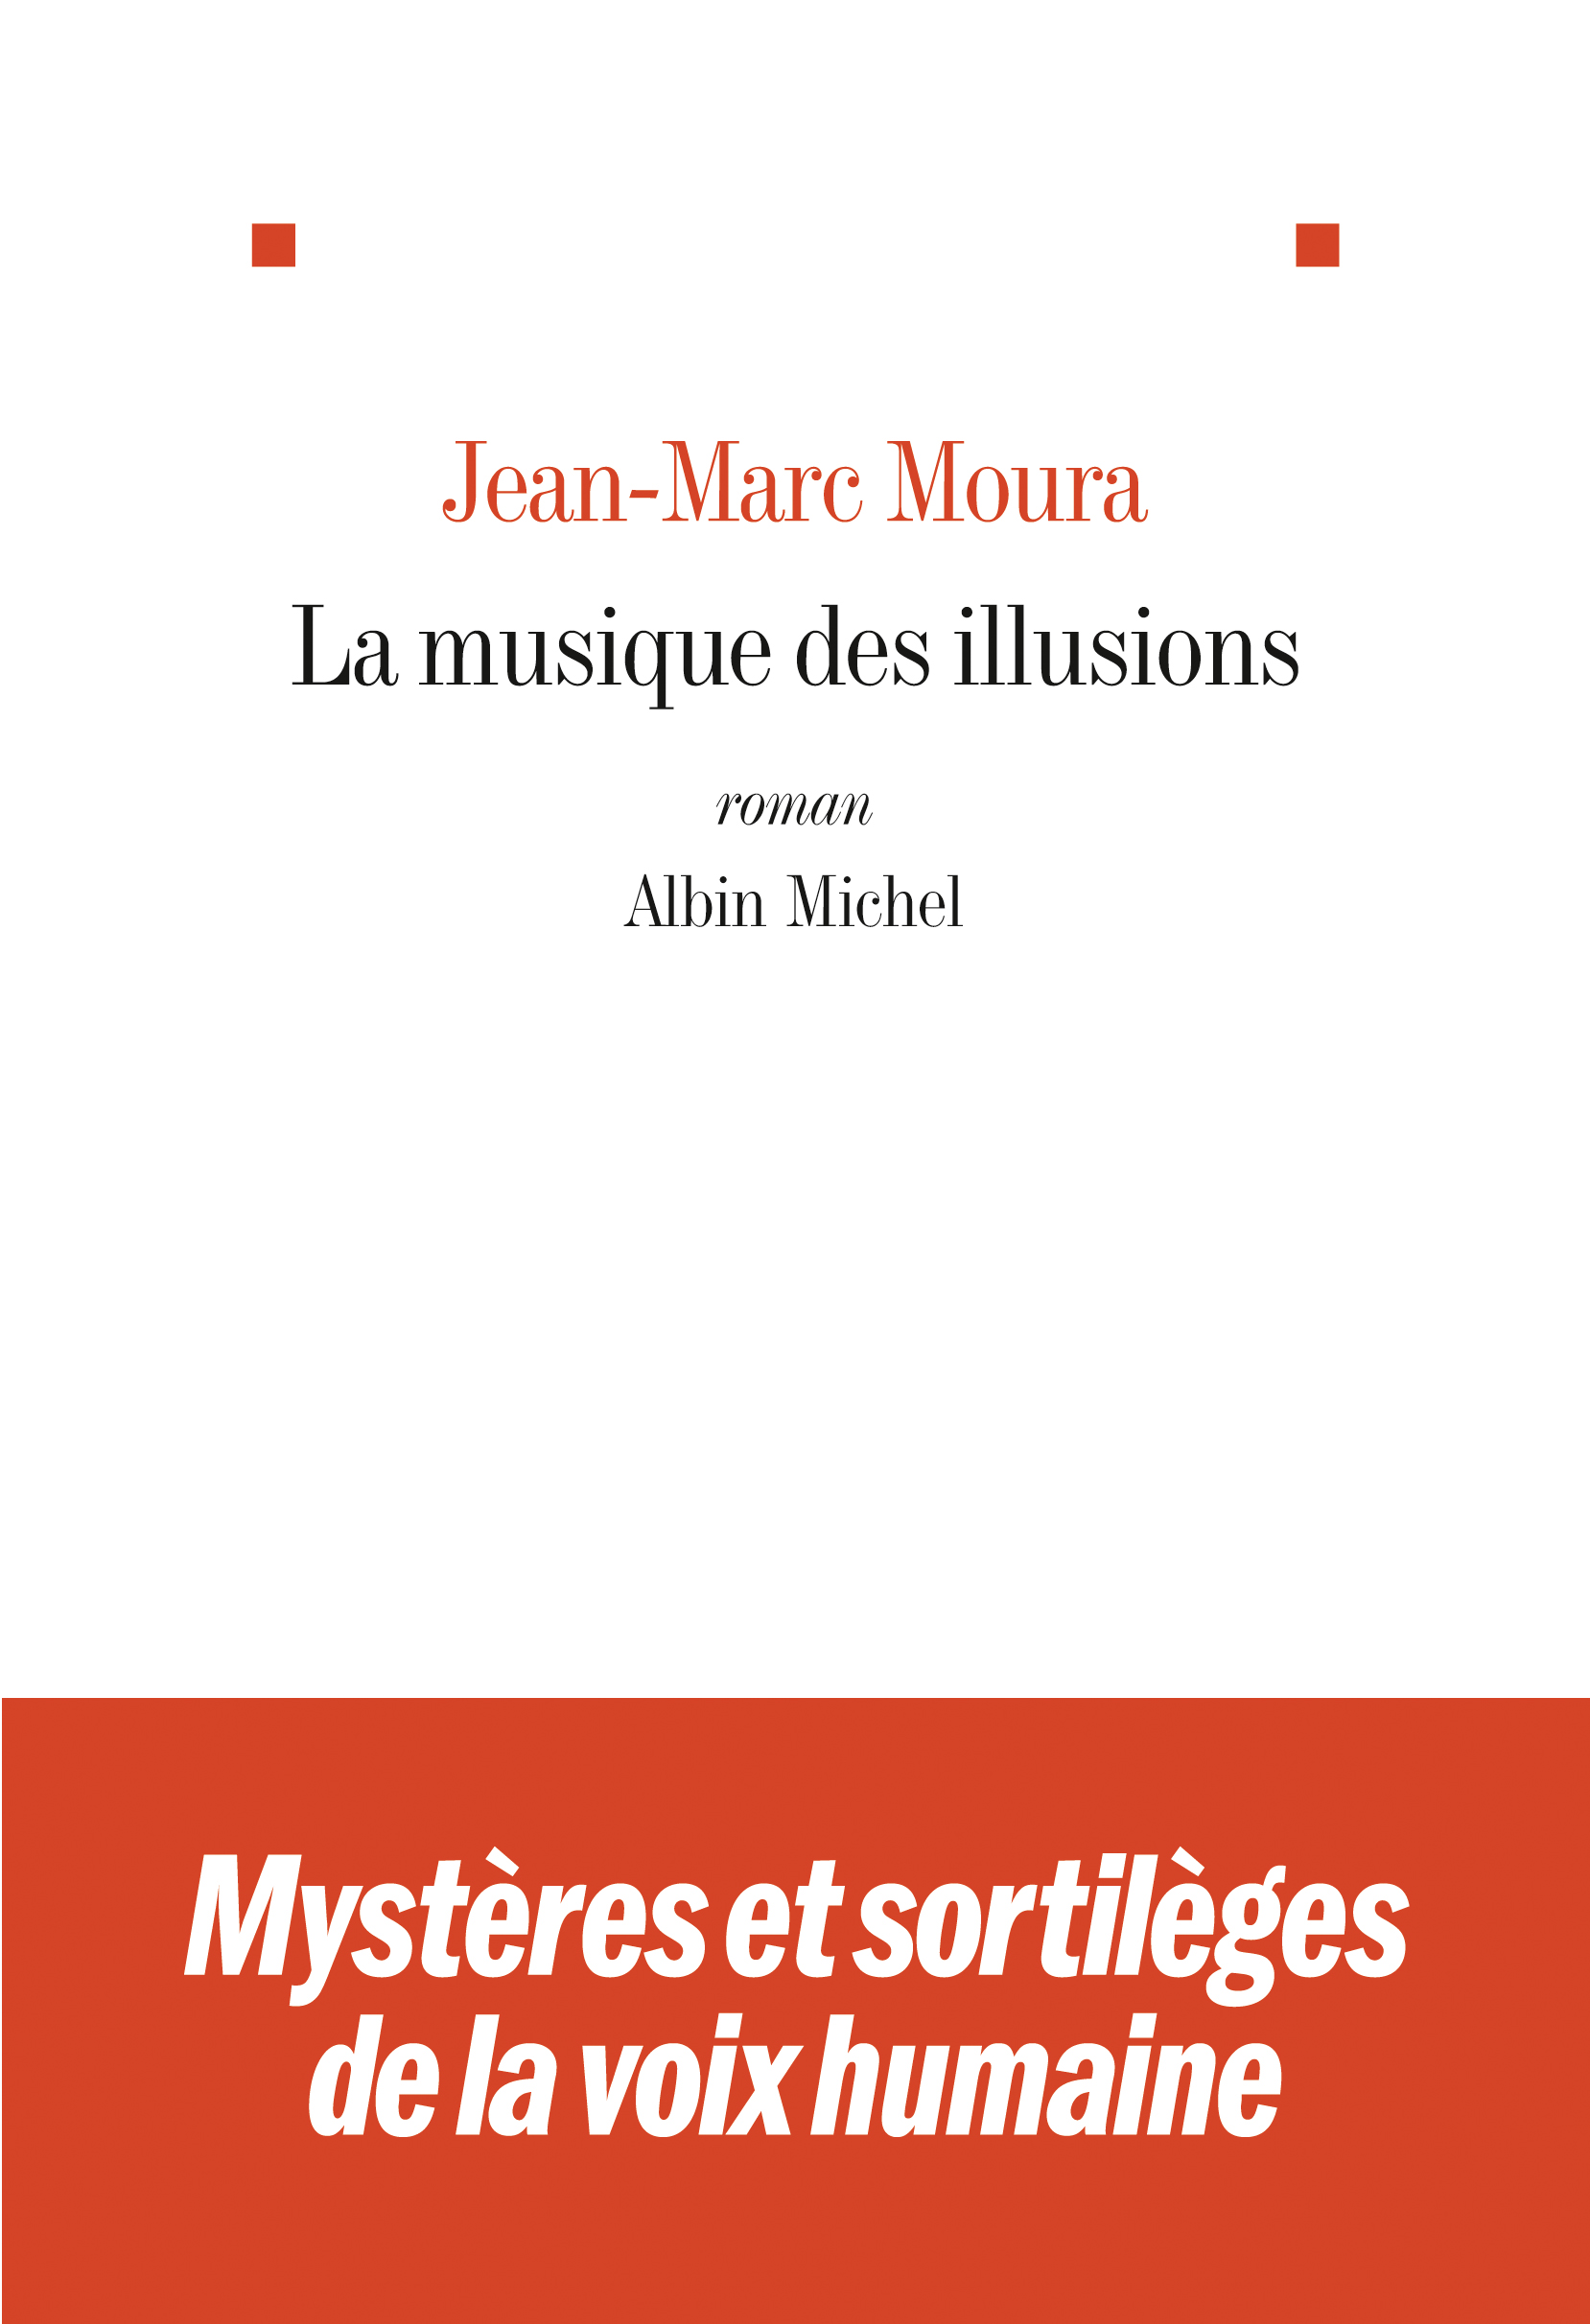 Couverture du livre La Musique des illusions